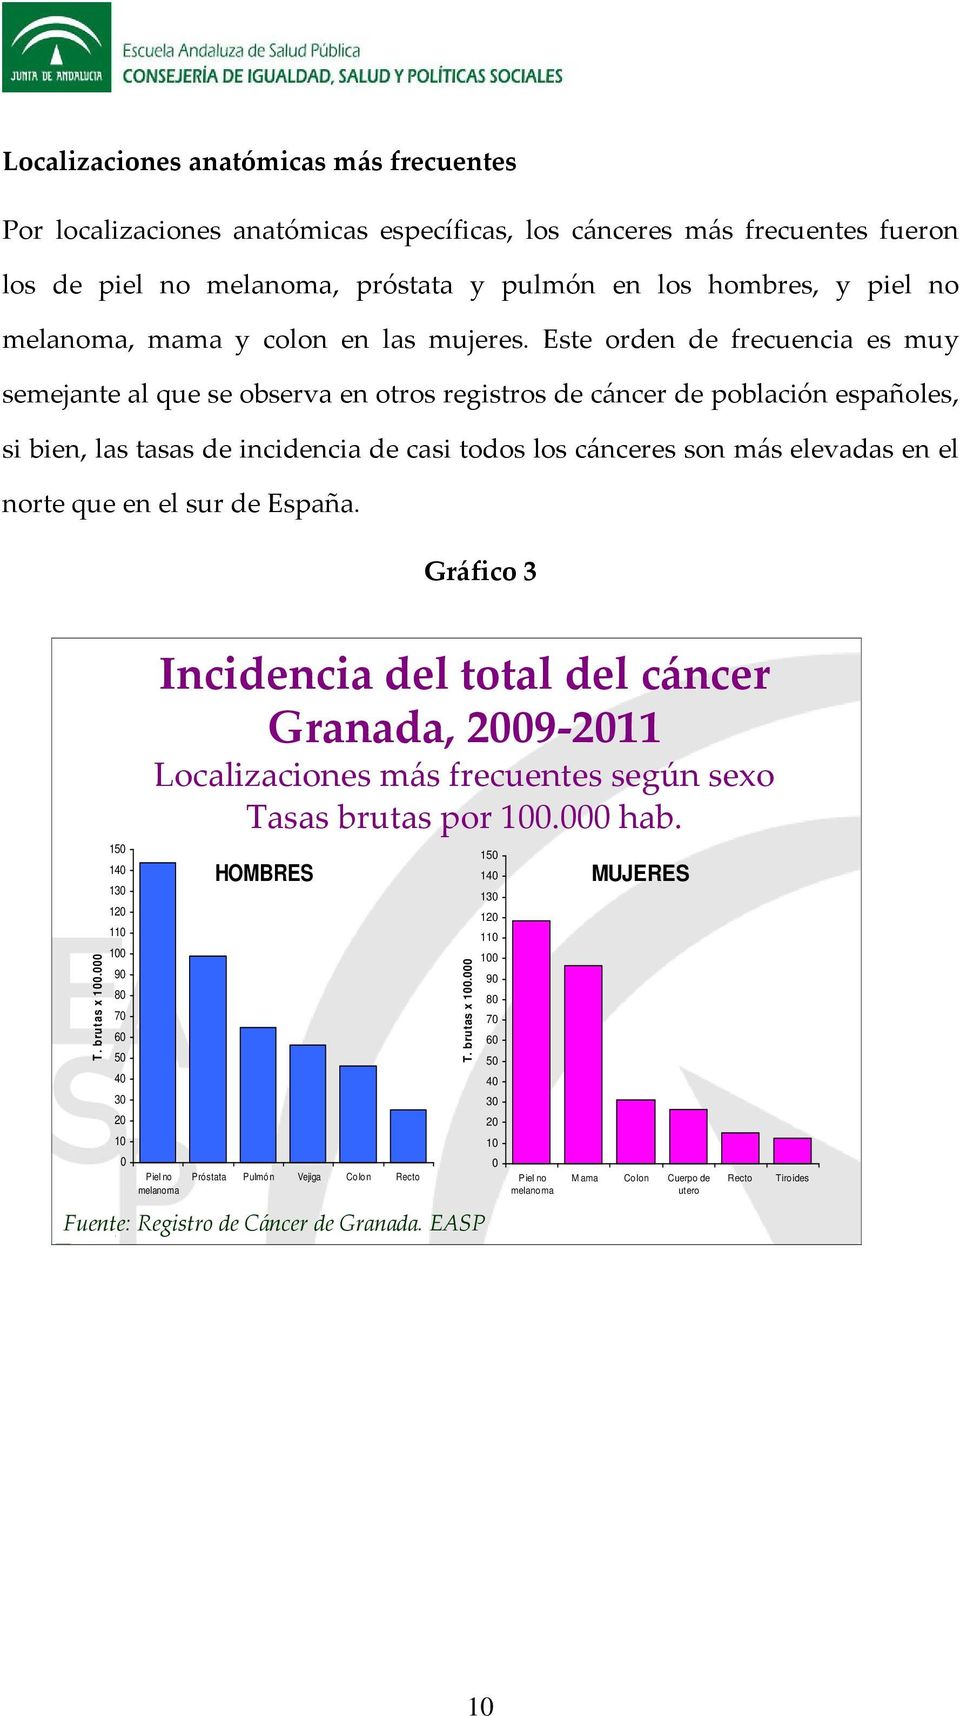 Este orden de frecuencia es muy semejante al que se observa en otros registros de cáncer de población españoles, si bien, las tasas de incidencia de casi todos los cánceres son más elevadas en el